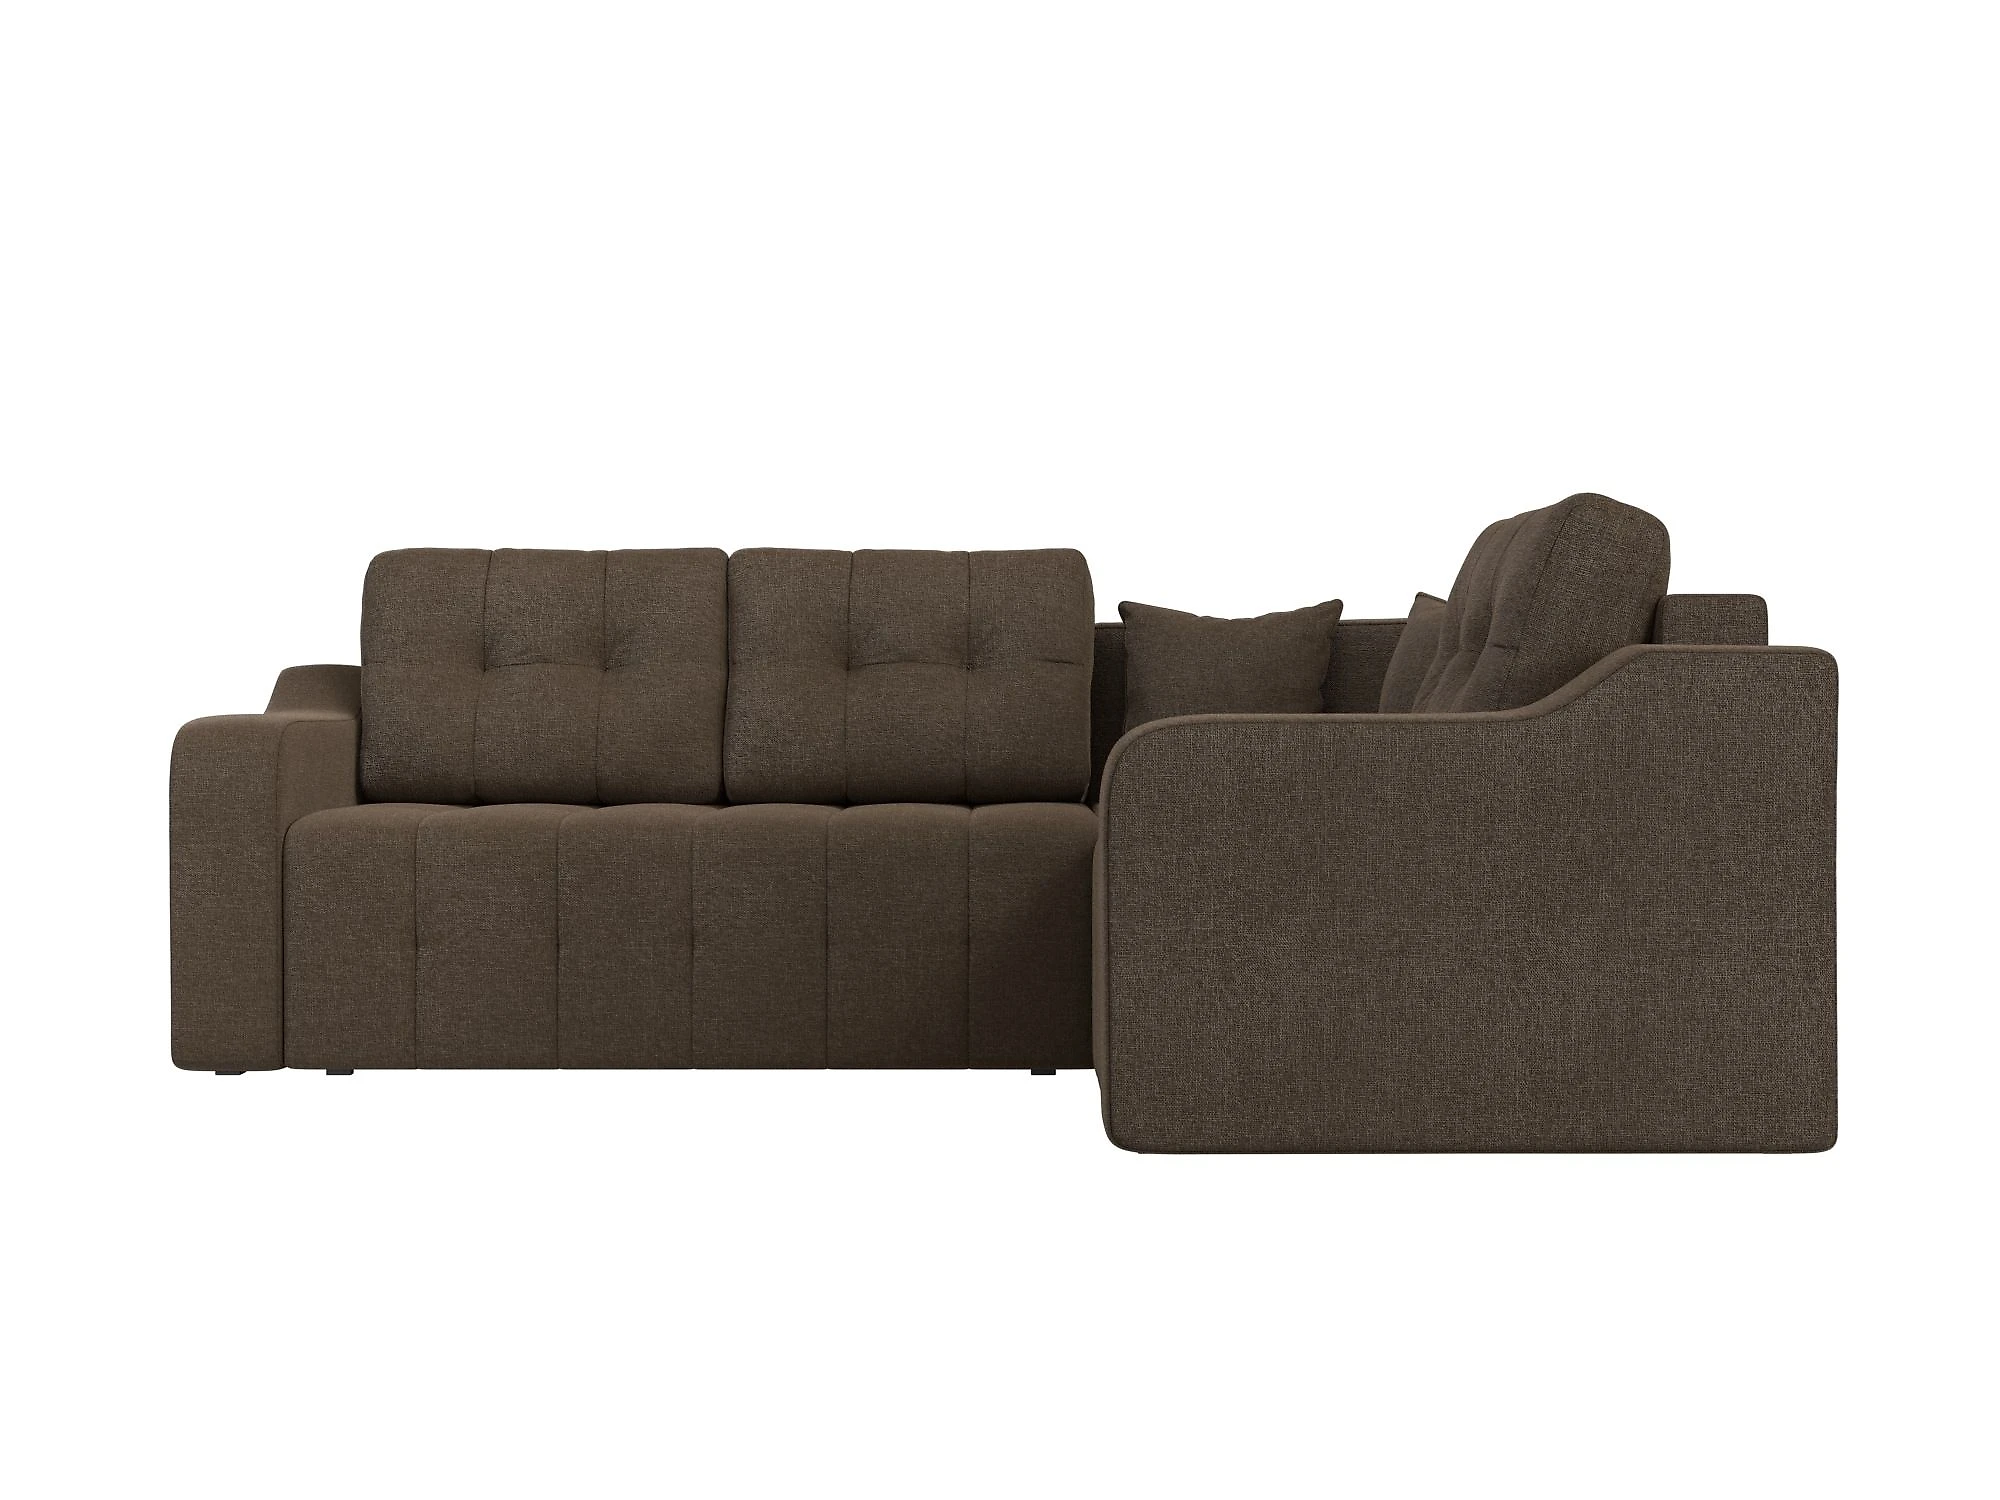  угловой диван из рогожки Кембридж Кантри Дизайн 2